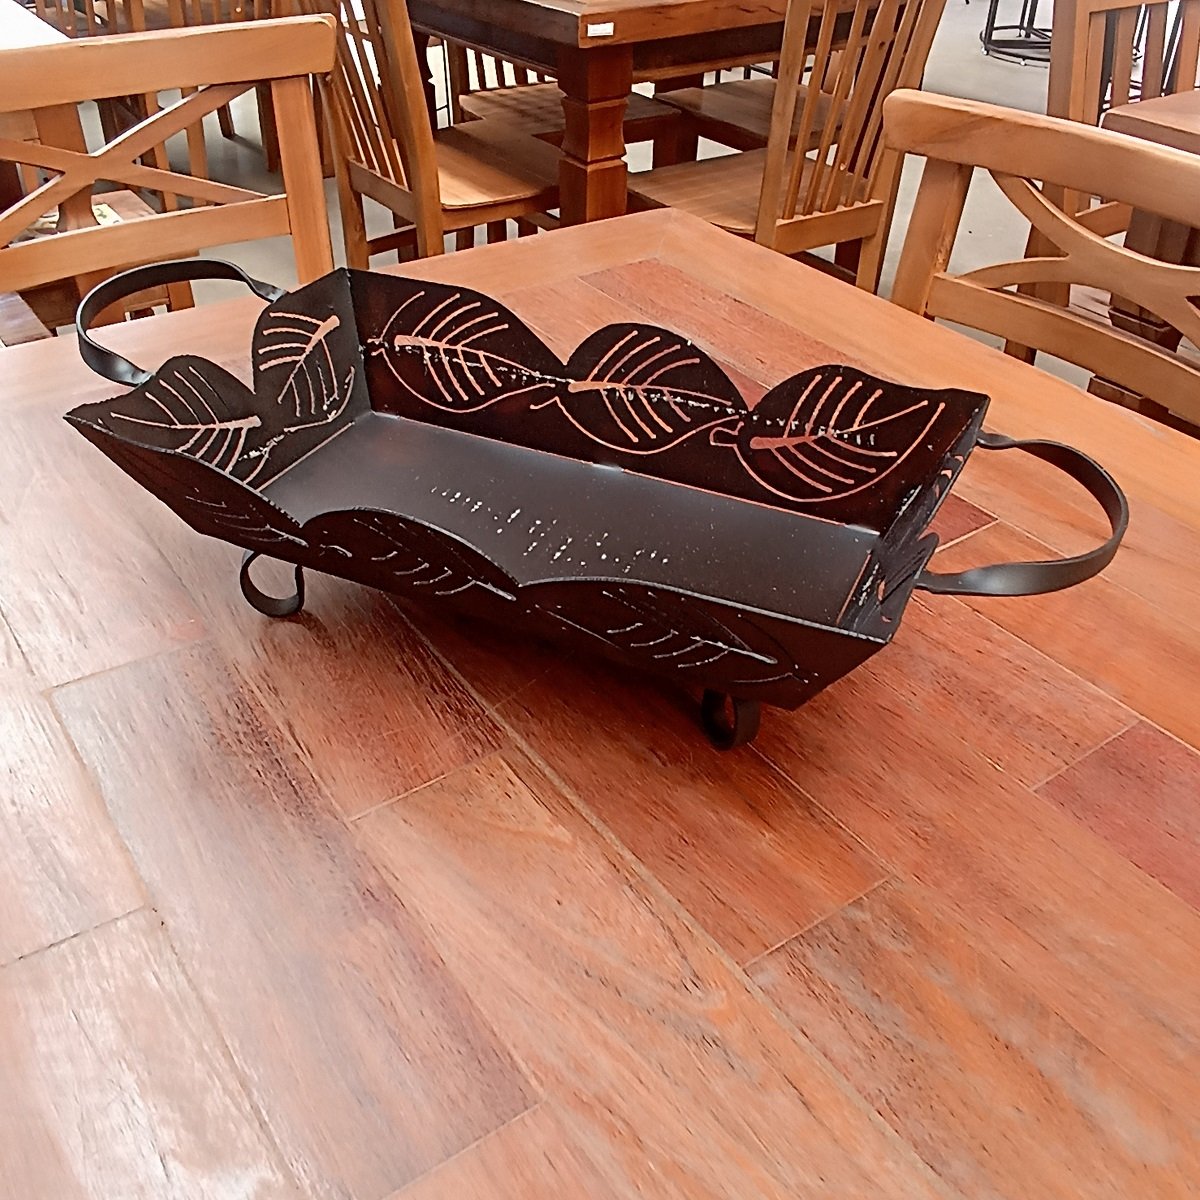 Bandeja de ferro para mesas e bancadas super resistente artesanato rústico para decoração e utilidad - 3